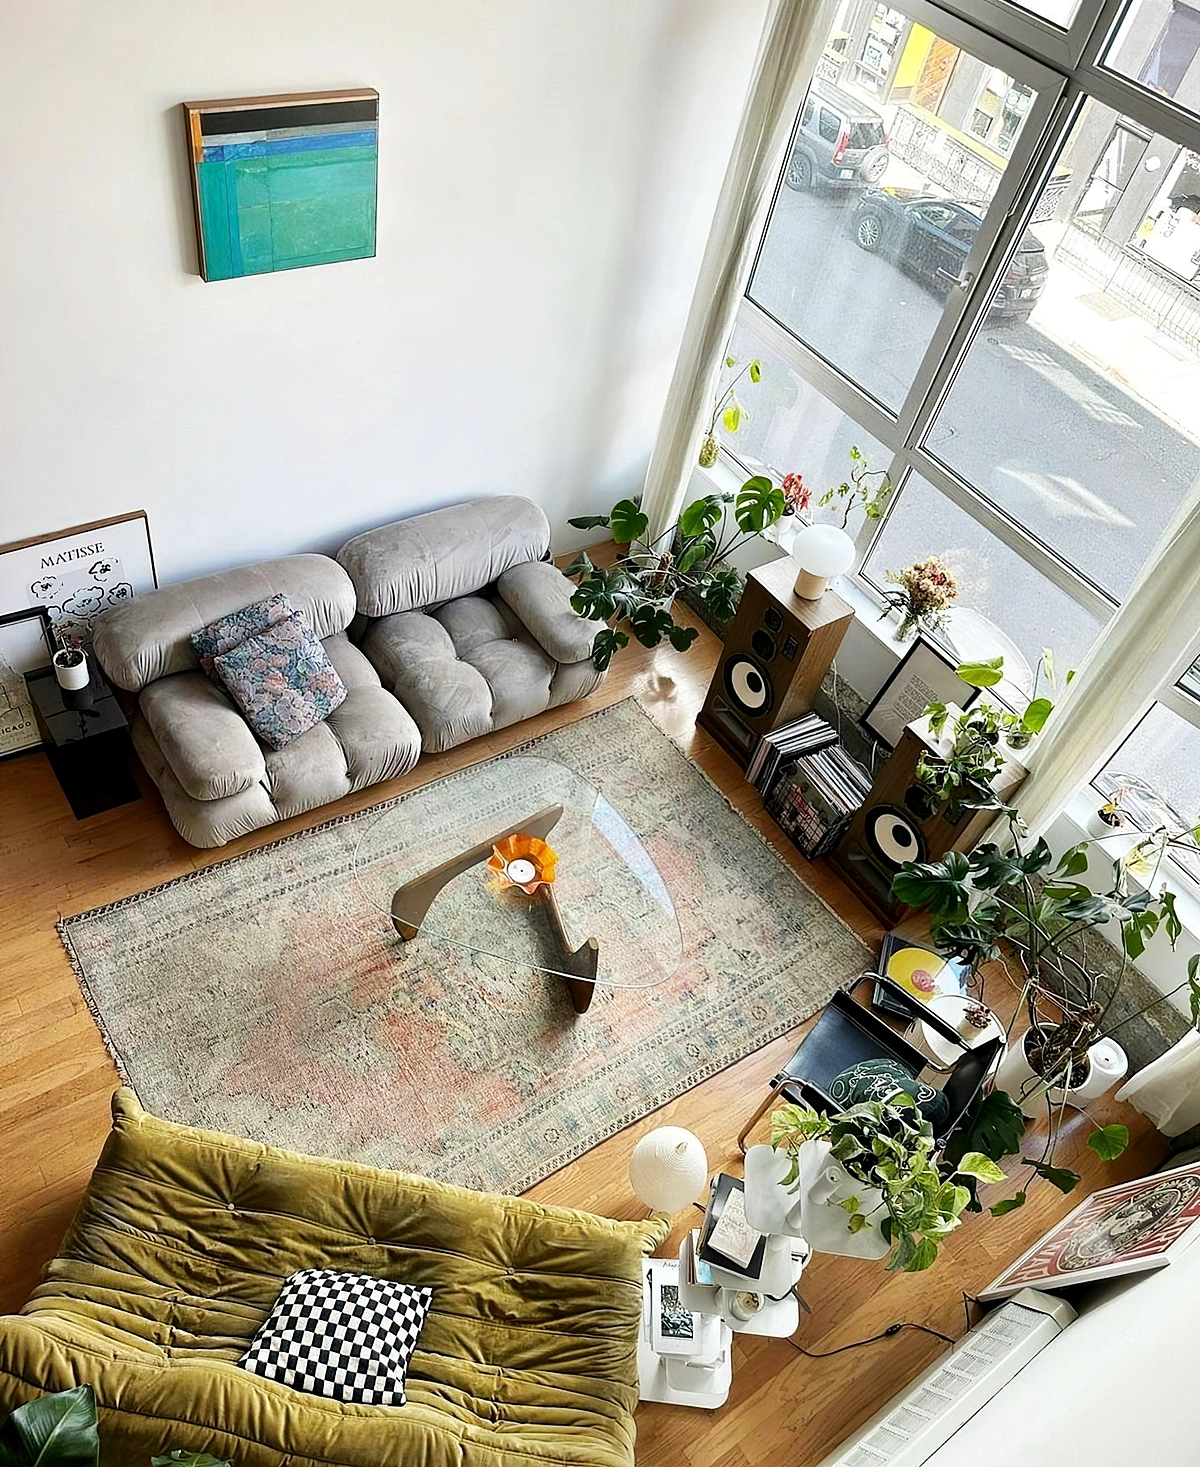 kleiner raum mit grossen fenstern wohnzimmergestaltung sofa myinterior